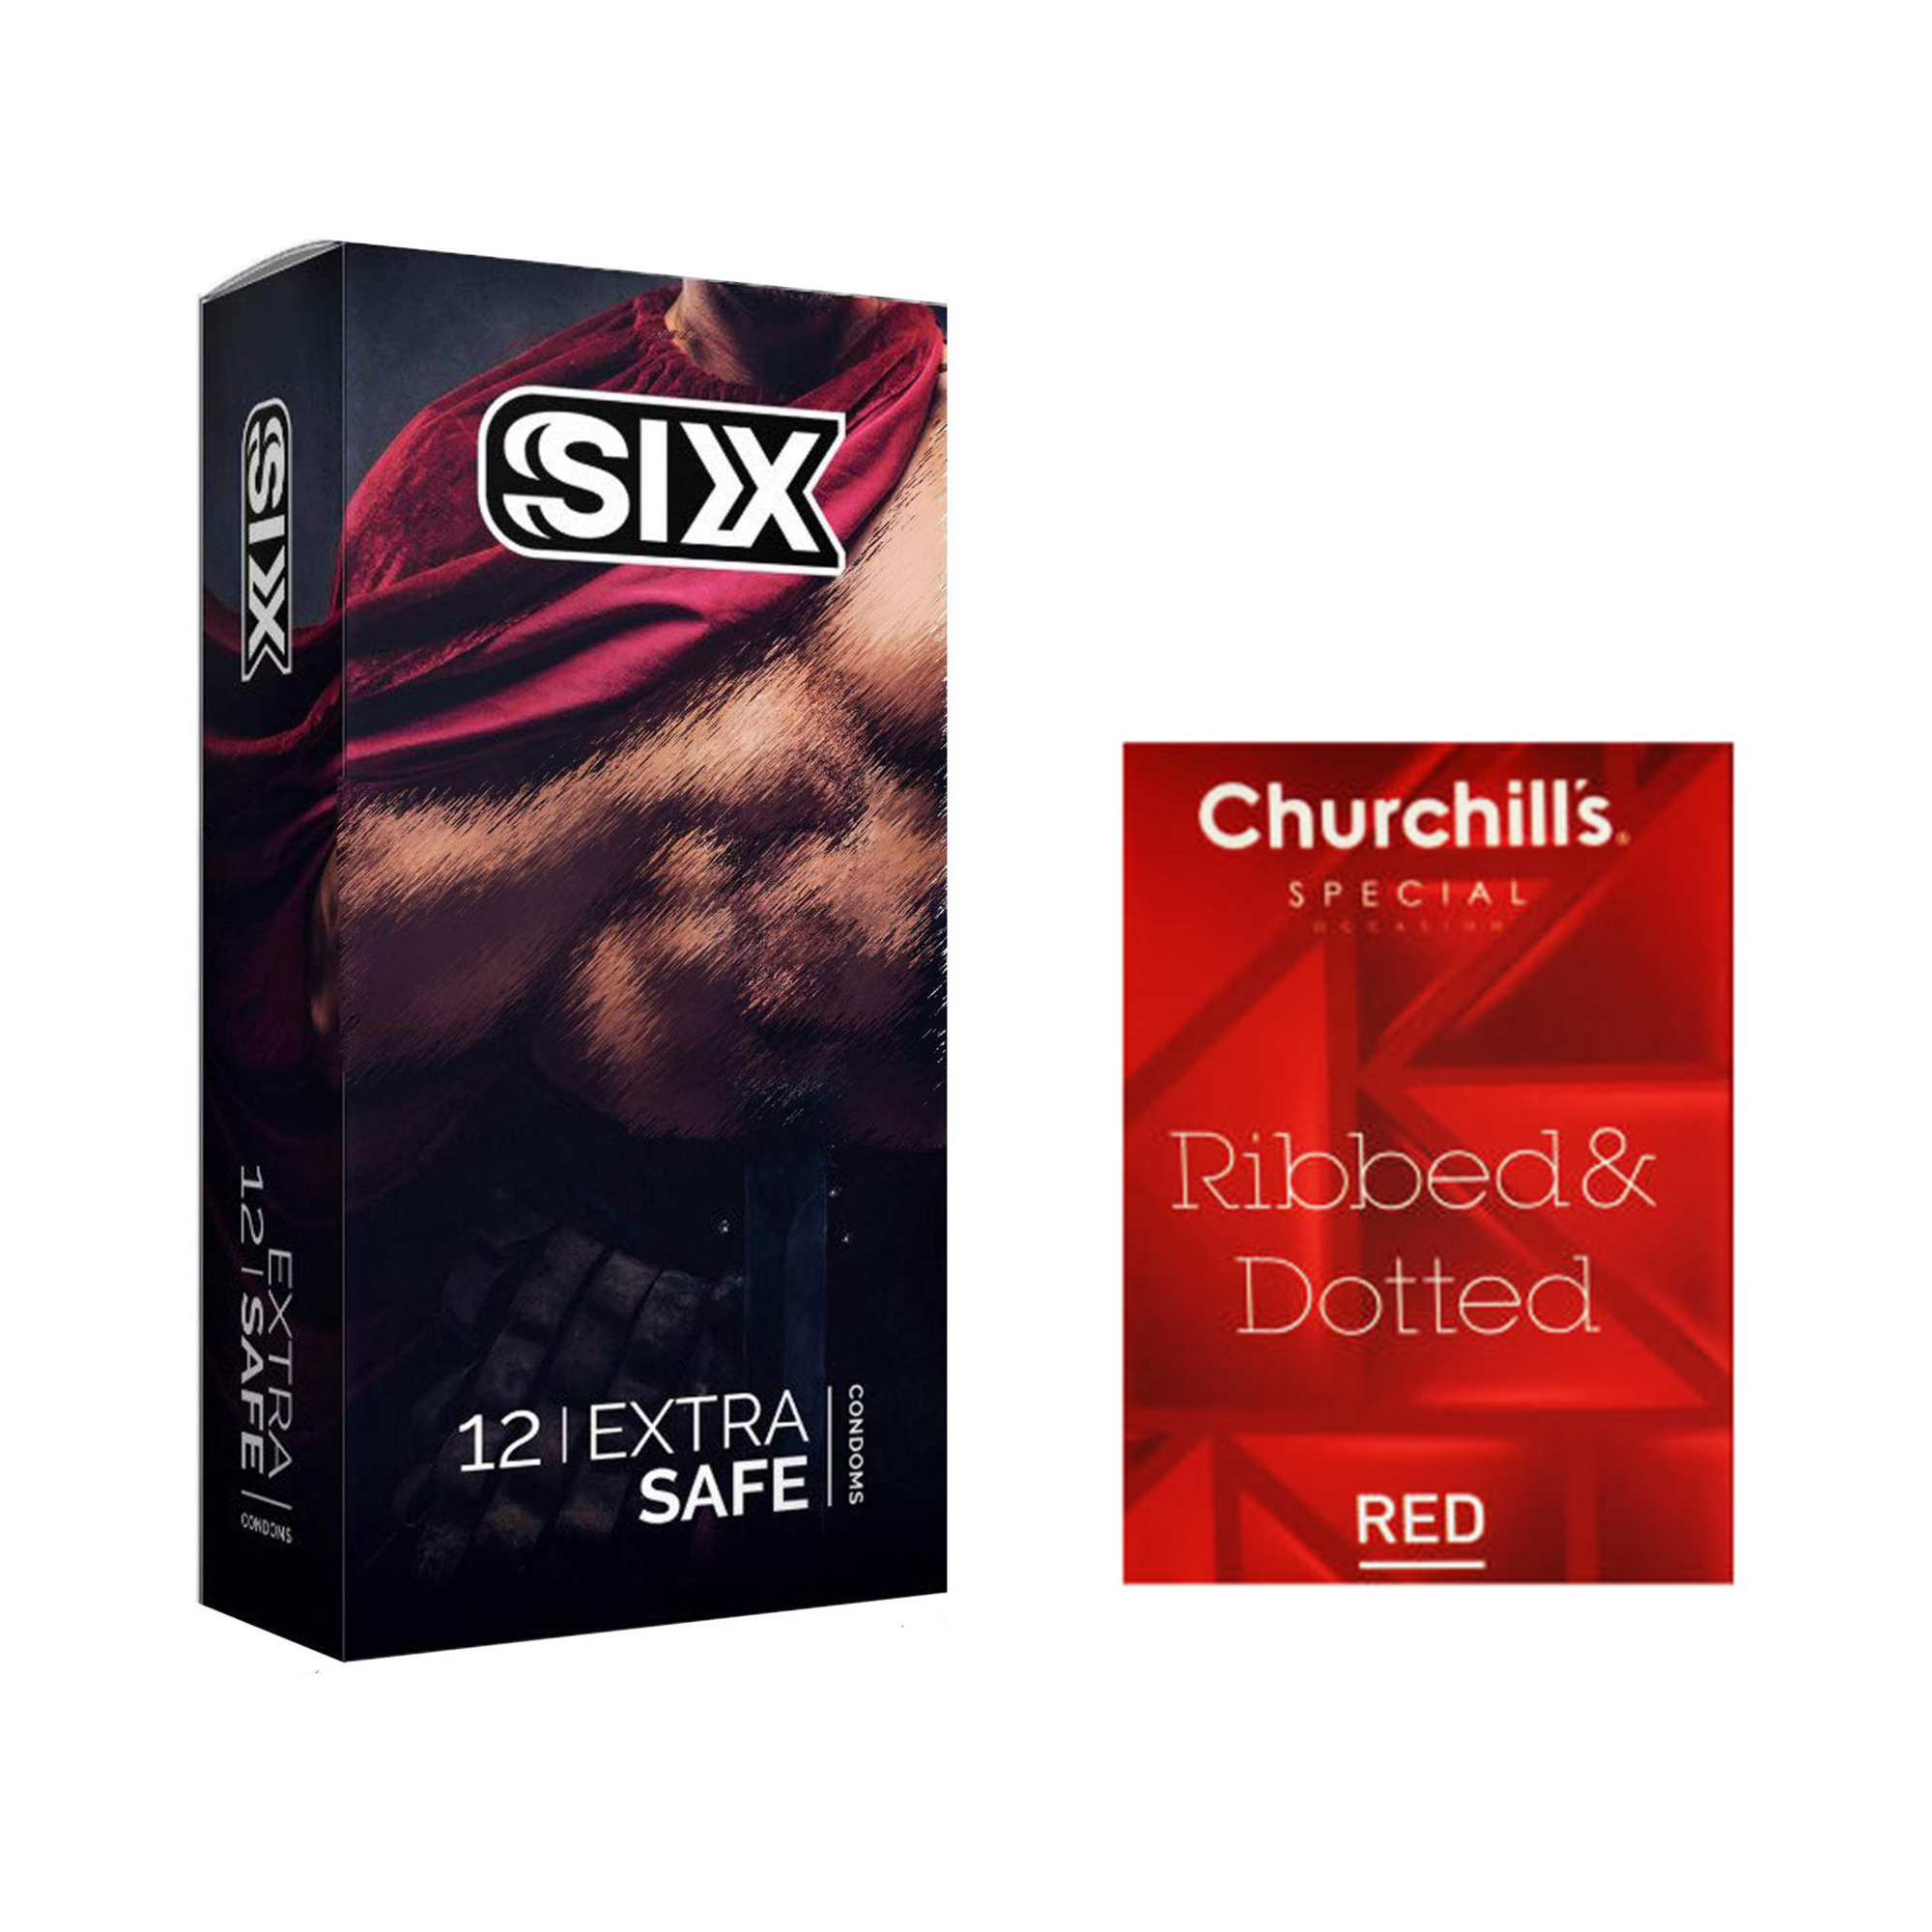 کاندوم سیکس مدل Max Safety بسته 12 عددی به همراه کاندوم چرچیلز مدل Hot Gel بسته 3 عددی